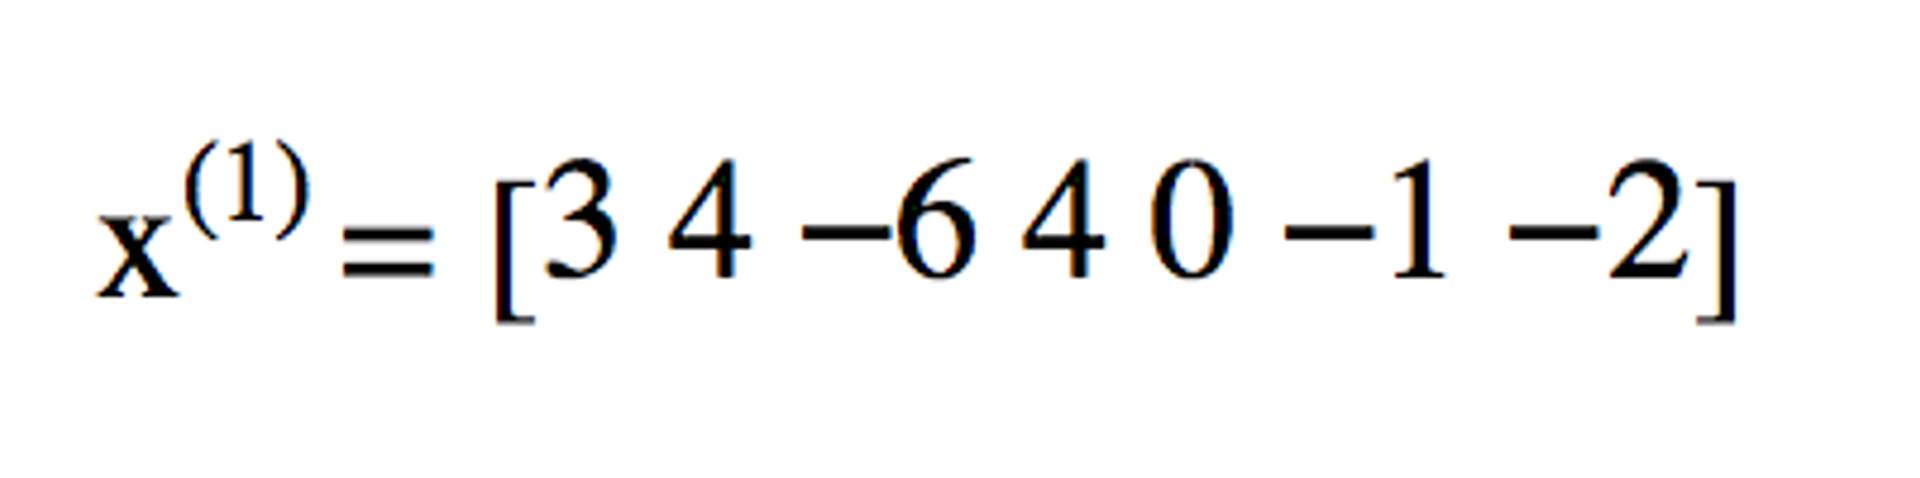 x(1) = 3 4 -6 4 0 -1 -2]